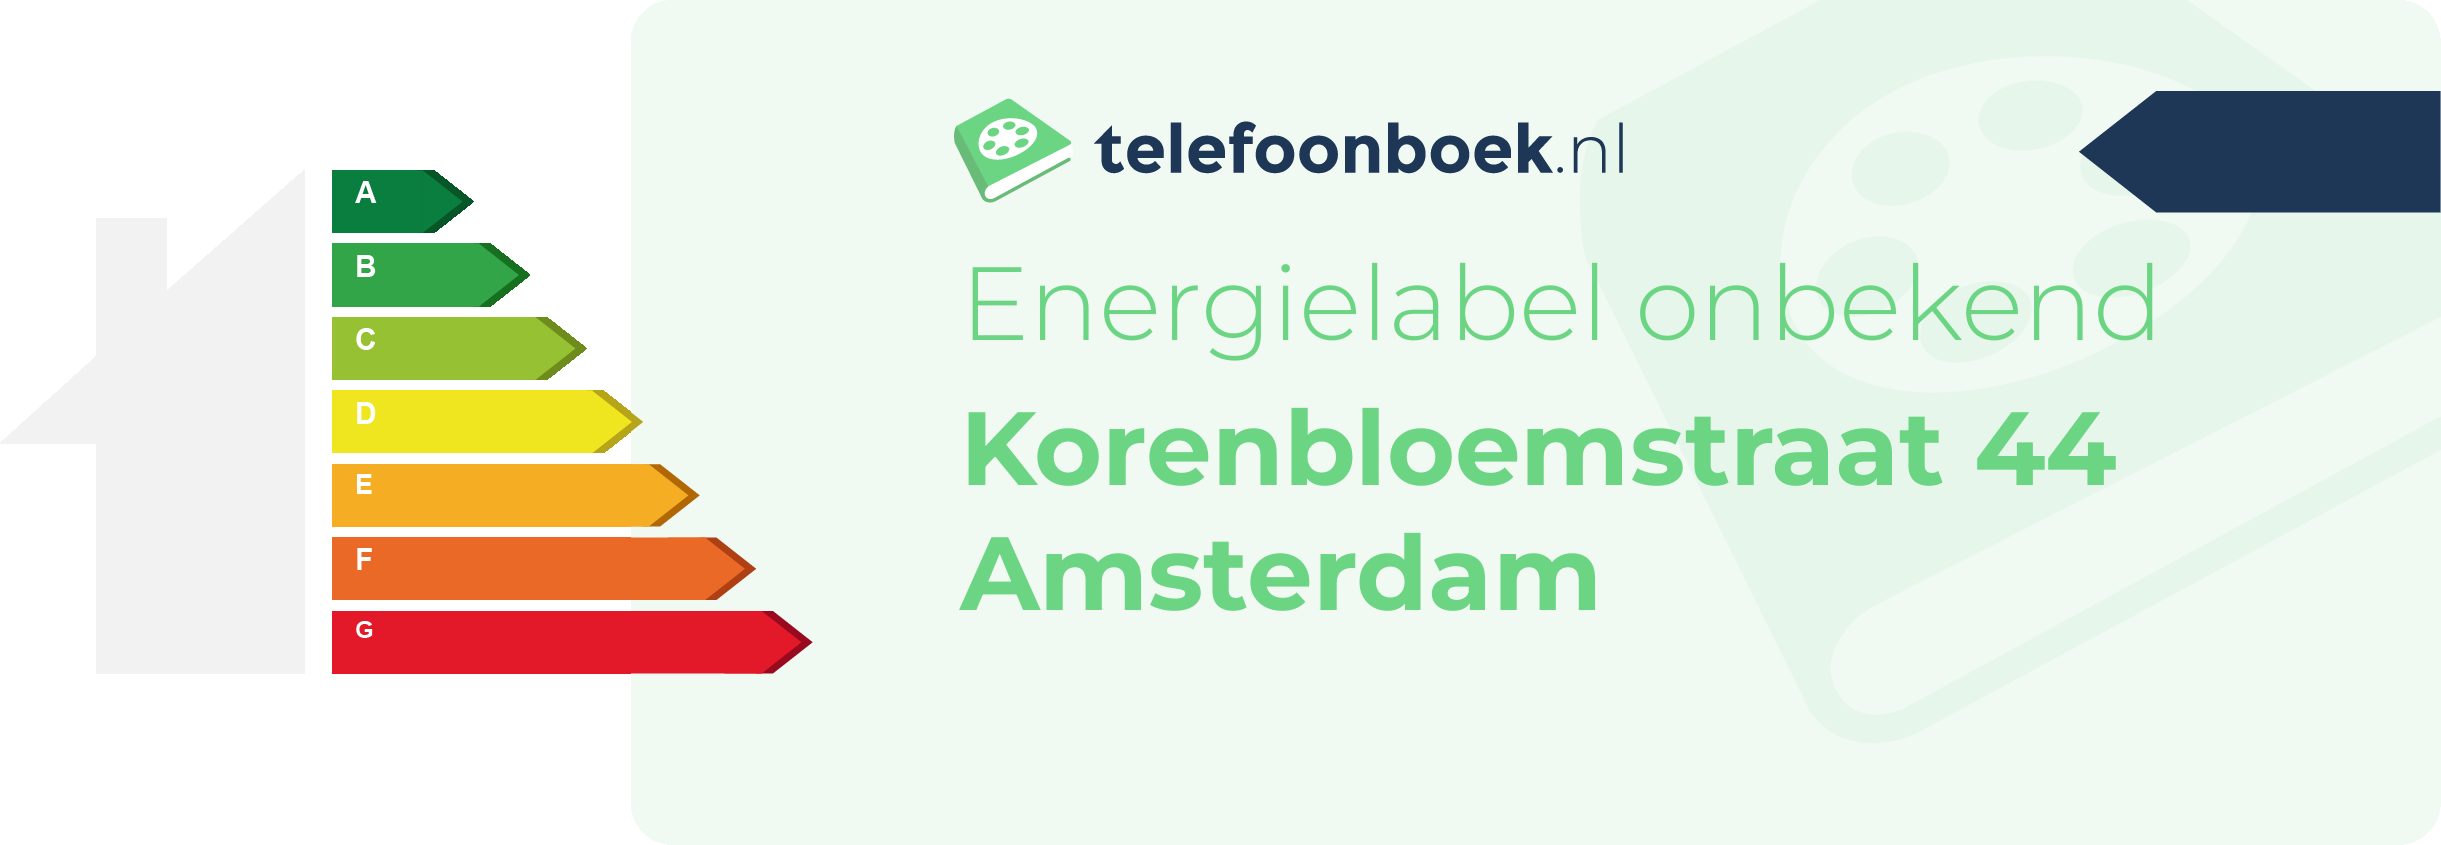 Energielabel Korenbloemstraat 44 Amsterdam